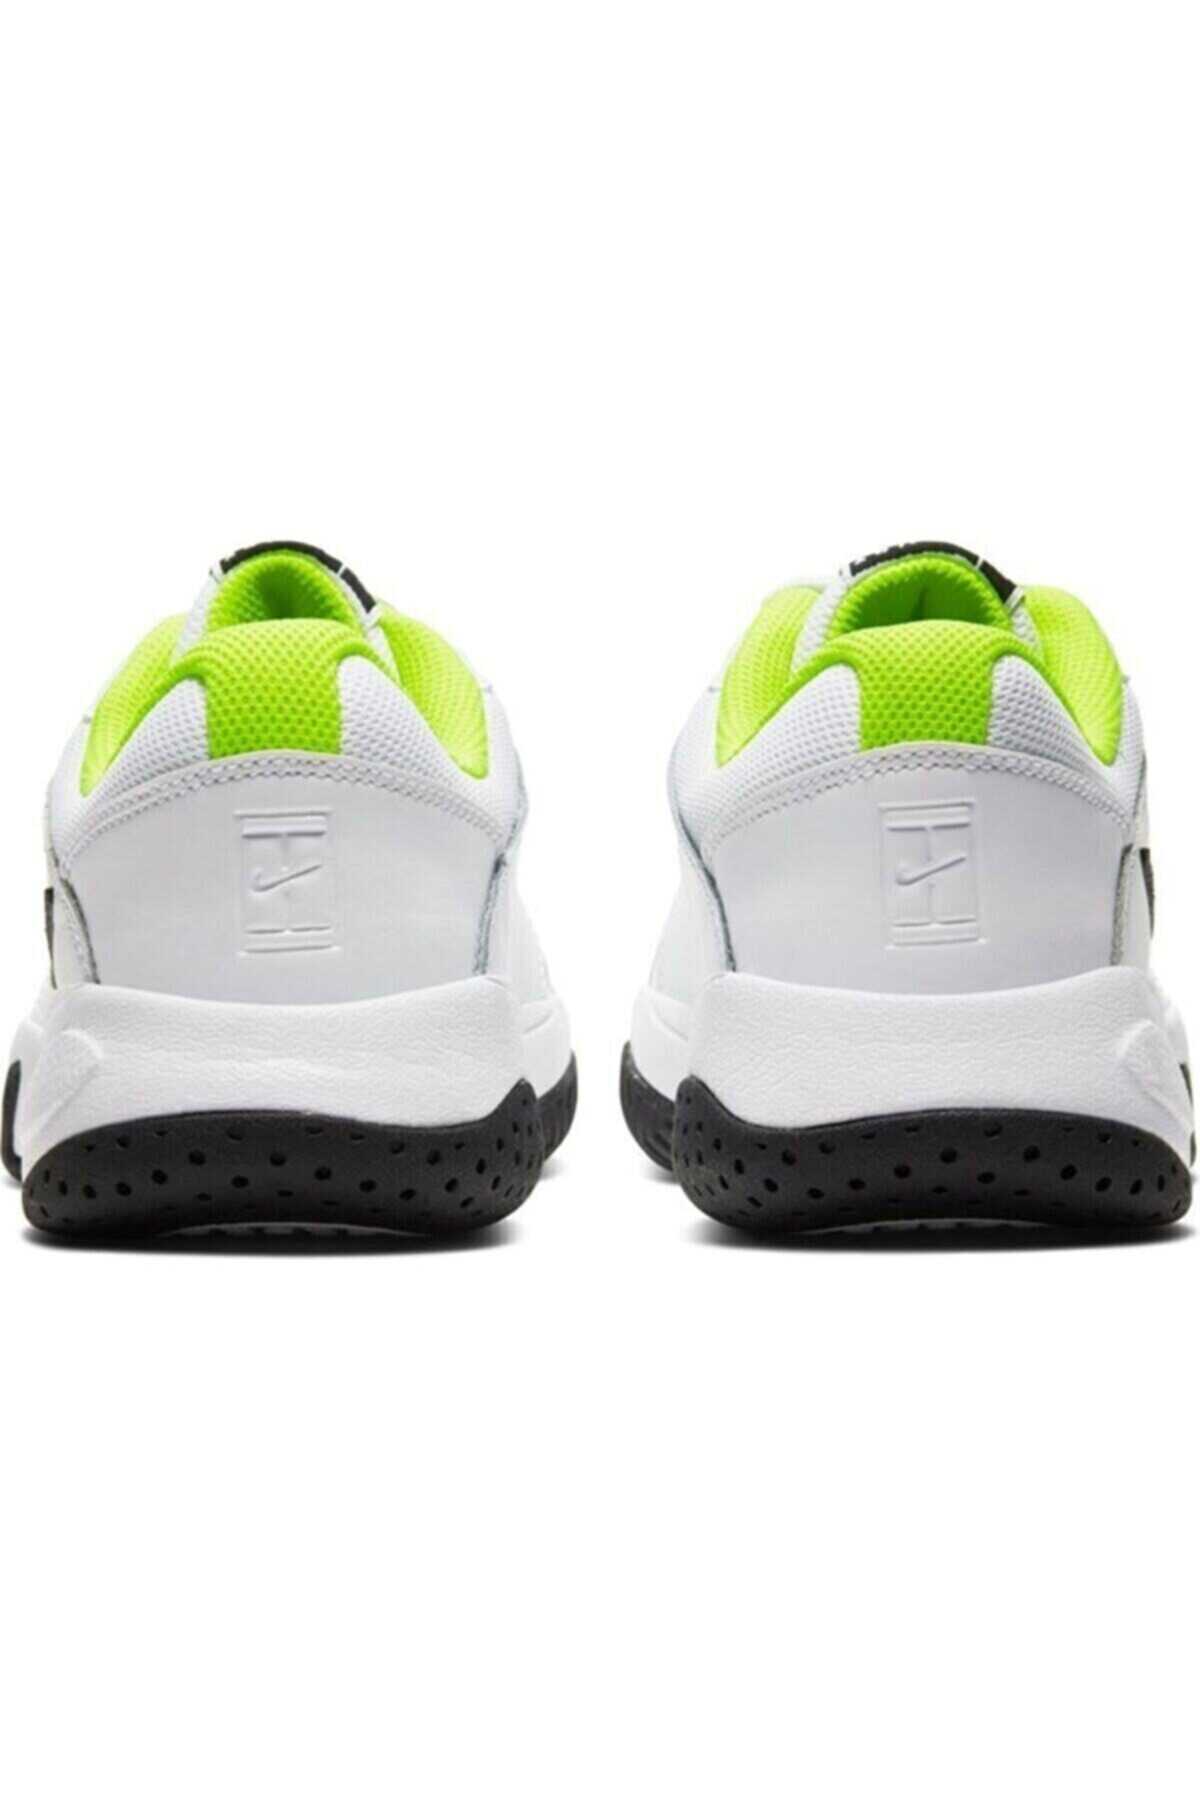 کفش تنیس یونیسکس سفید مشکی برند Nike 